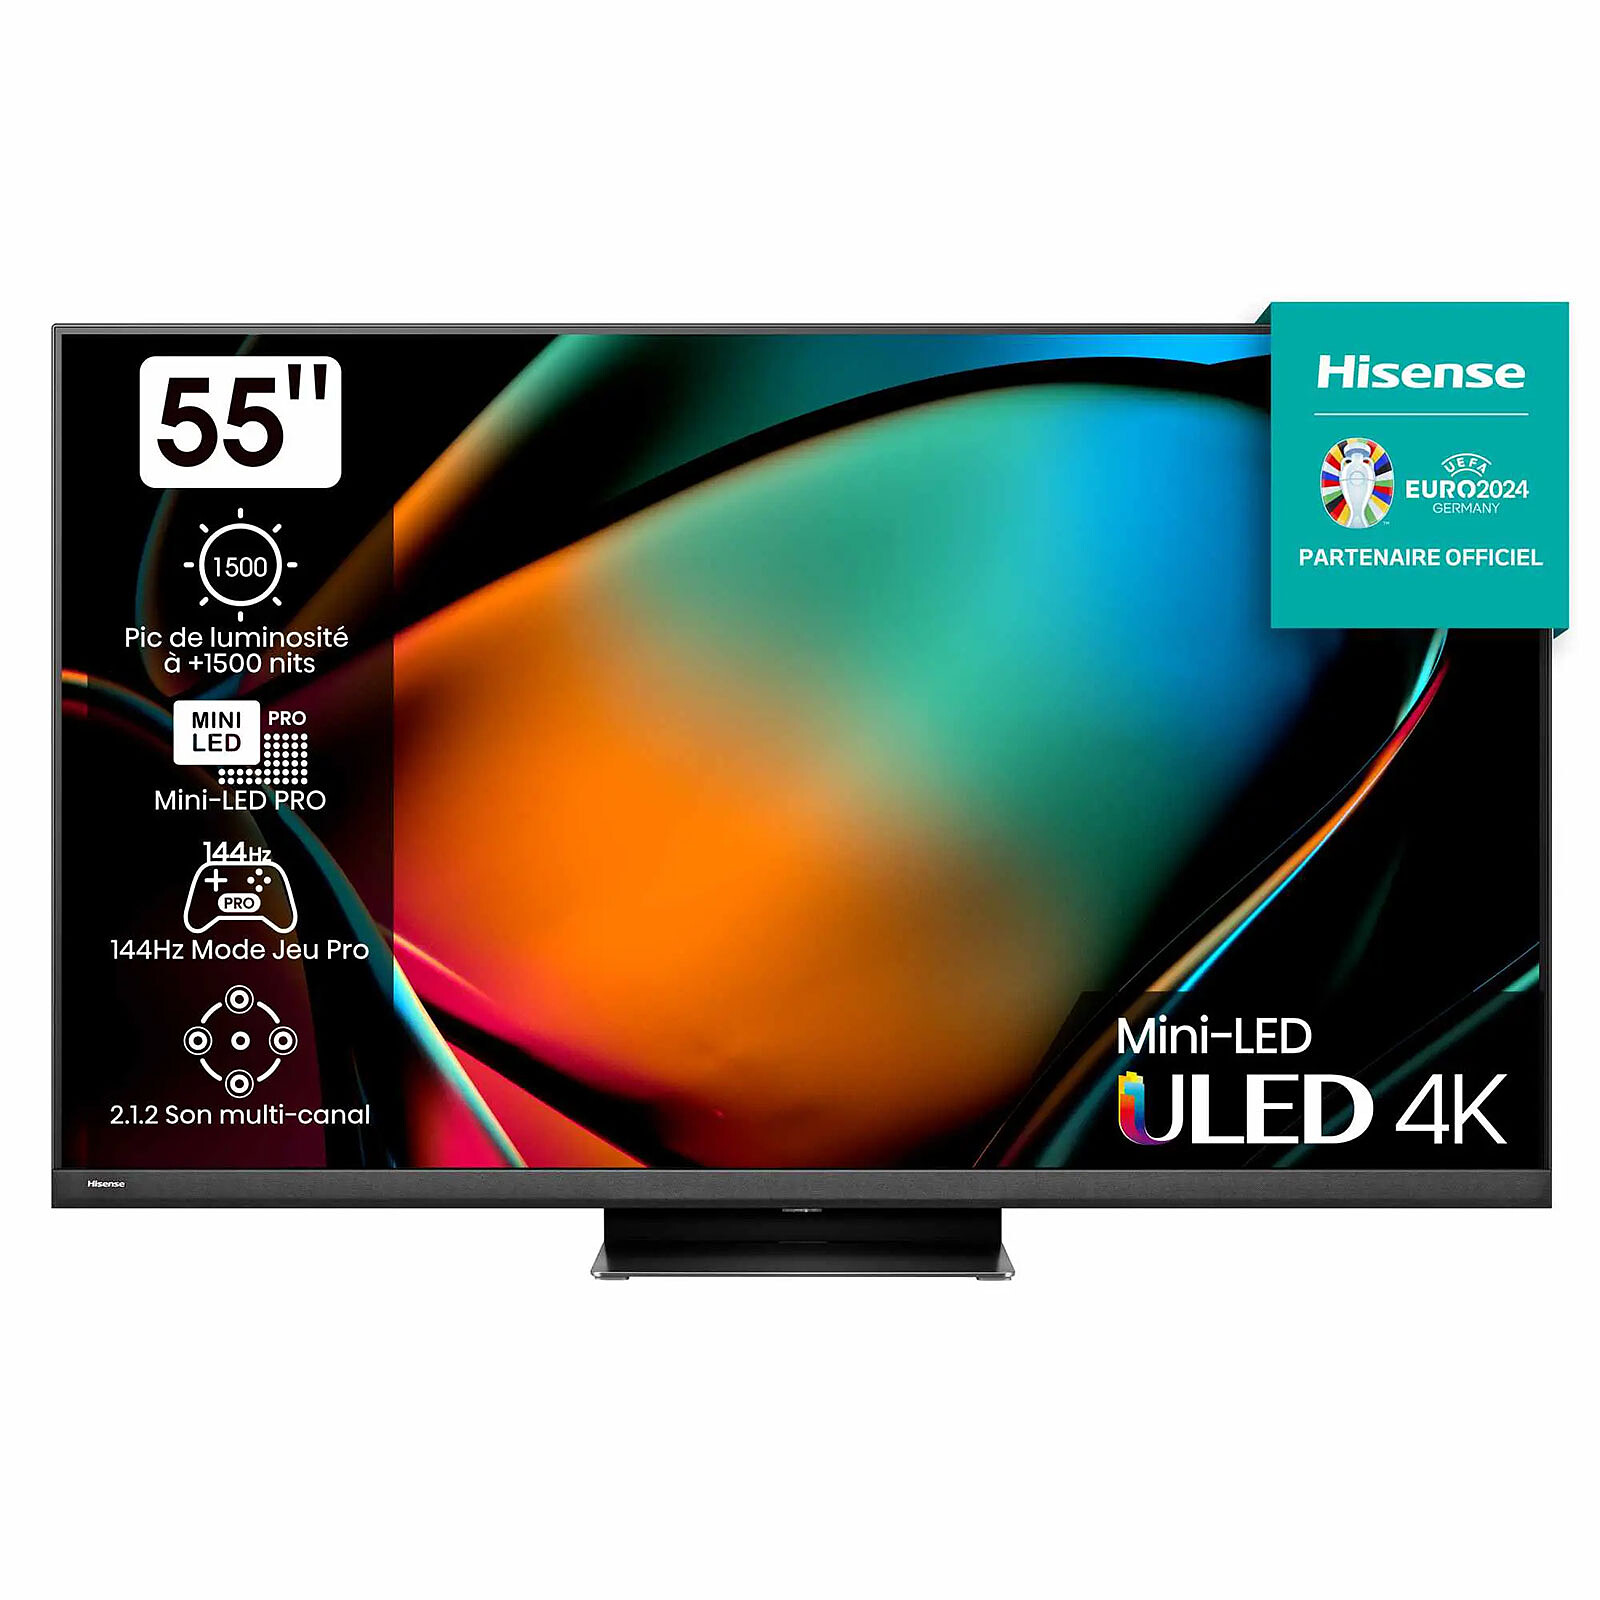 55 pulgadas, 4K UHD, HDR10+ y Alexa: este televisor es todo un